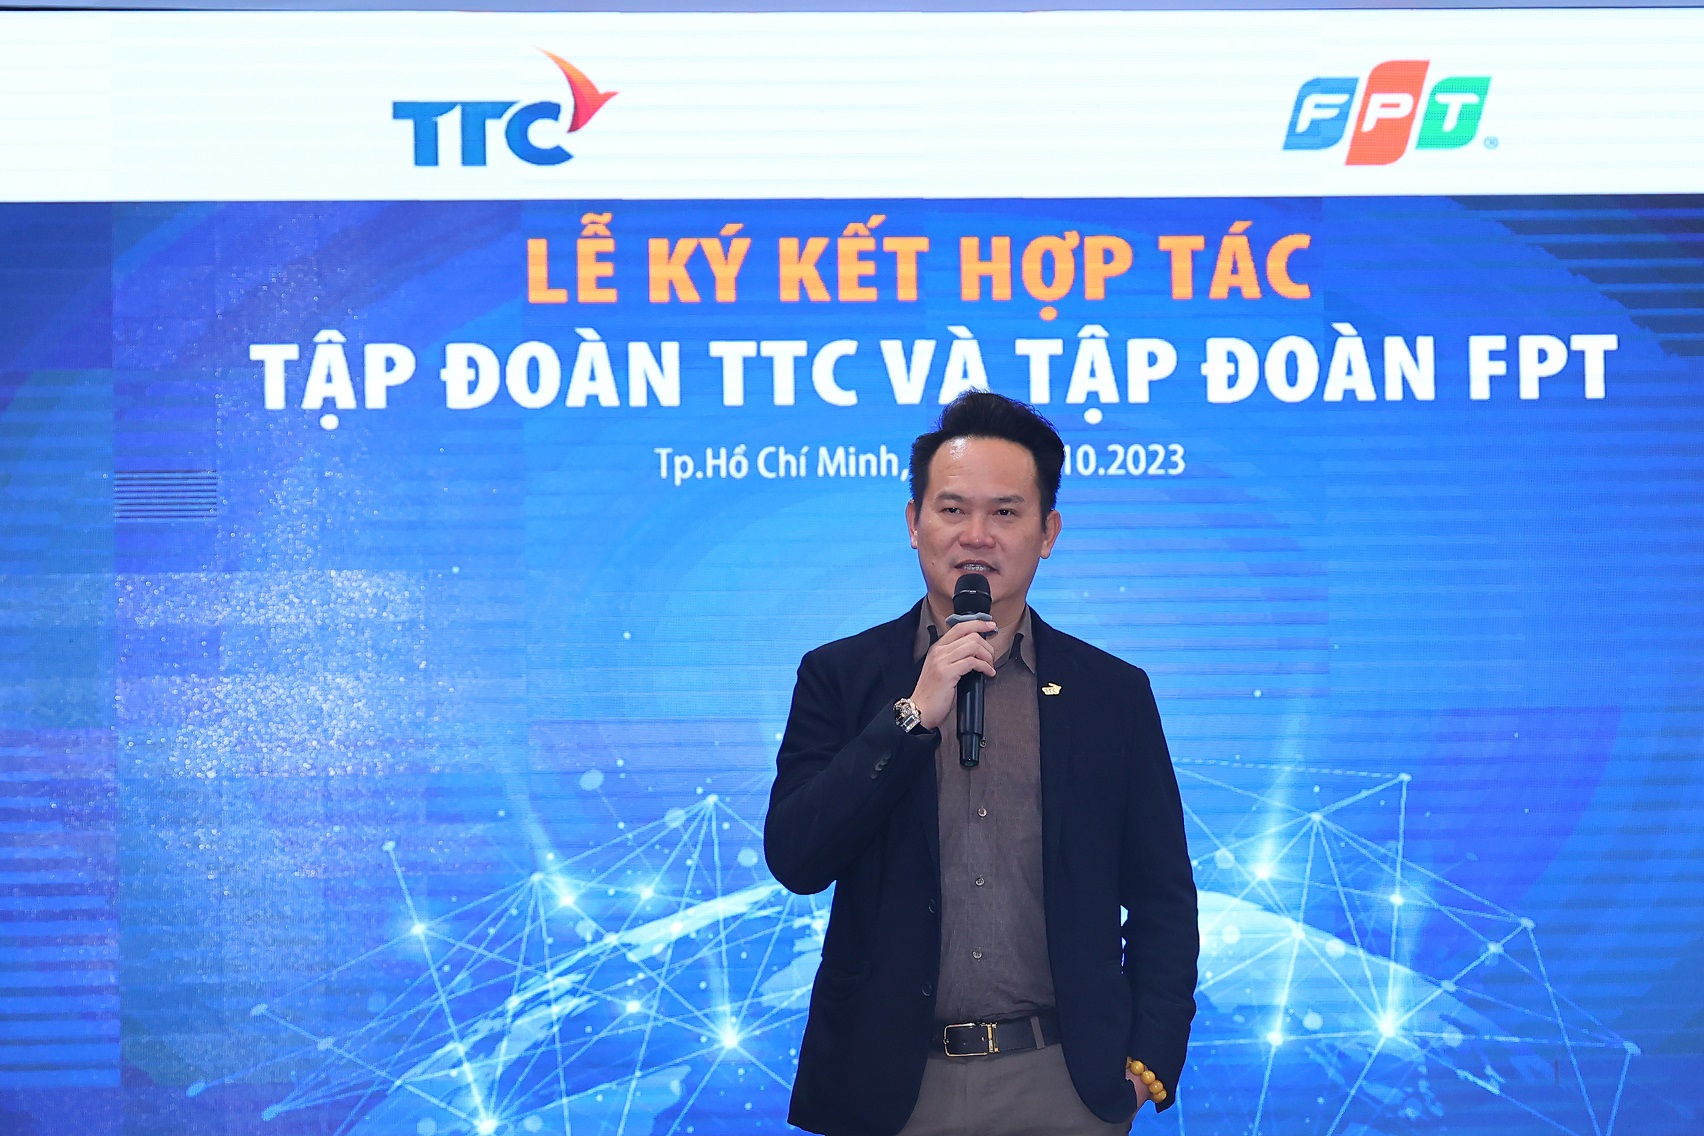 Tập đoàn TTC và Tập đoàn FPT bắt tay hợp tác, mở ra cơ hội kinh doanh mới - Ảnh 3.